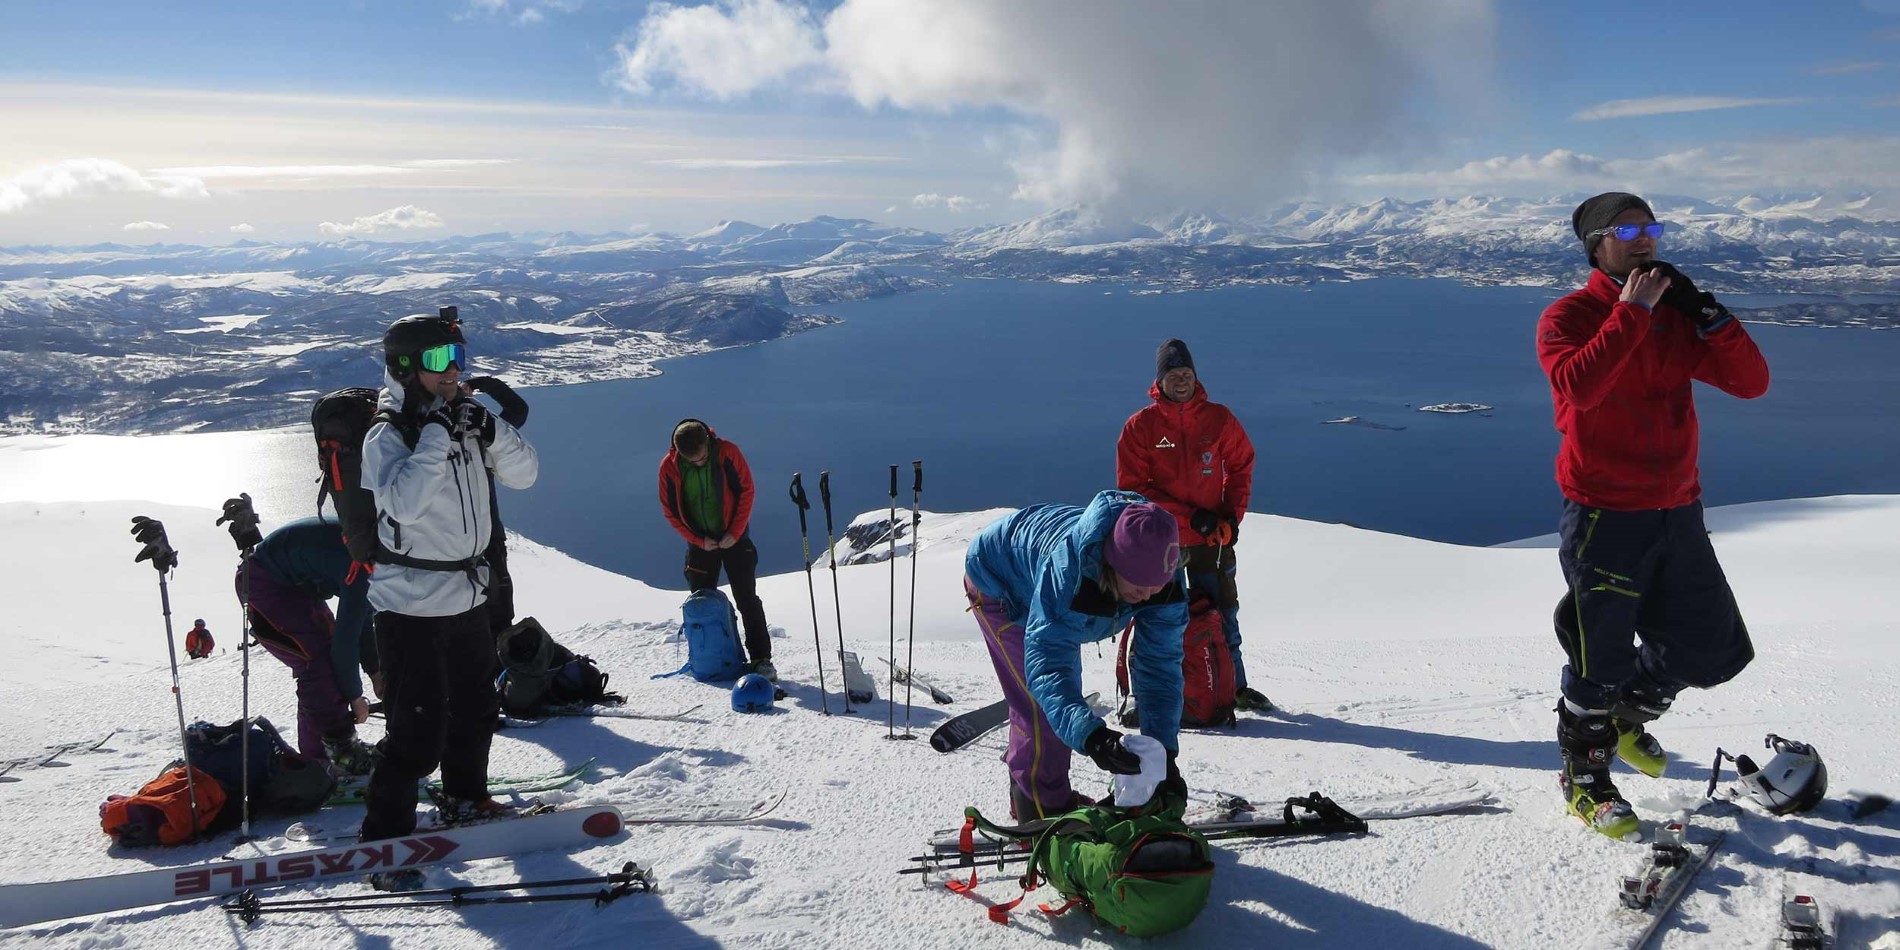 En grupp människor åker skidor ovanpå ett snötäckt berg